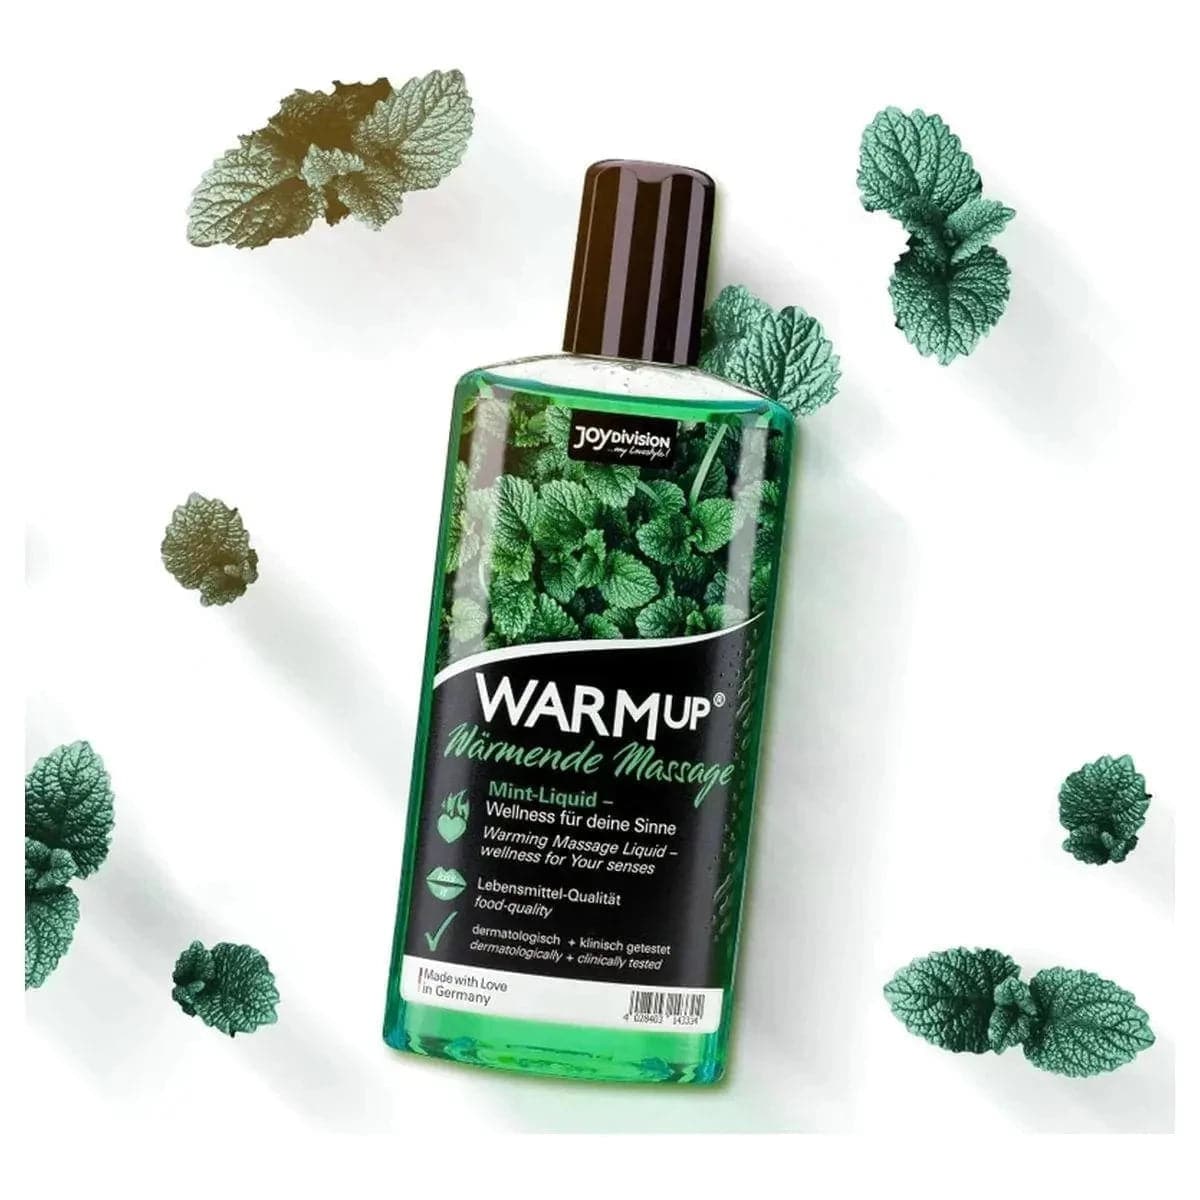 WARMup - Óleo Massagem Comestível Menta 150ml - Aquecimento e Aroma de Fruta